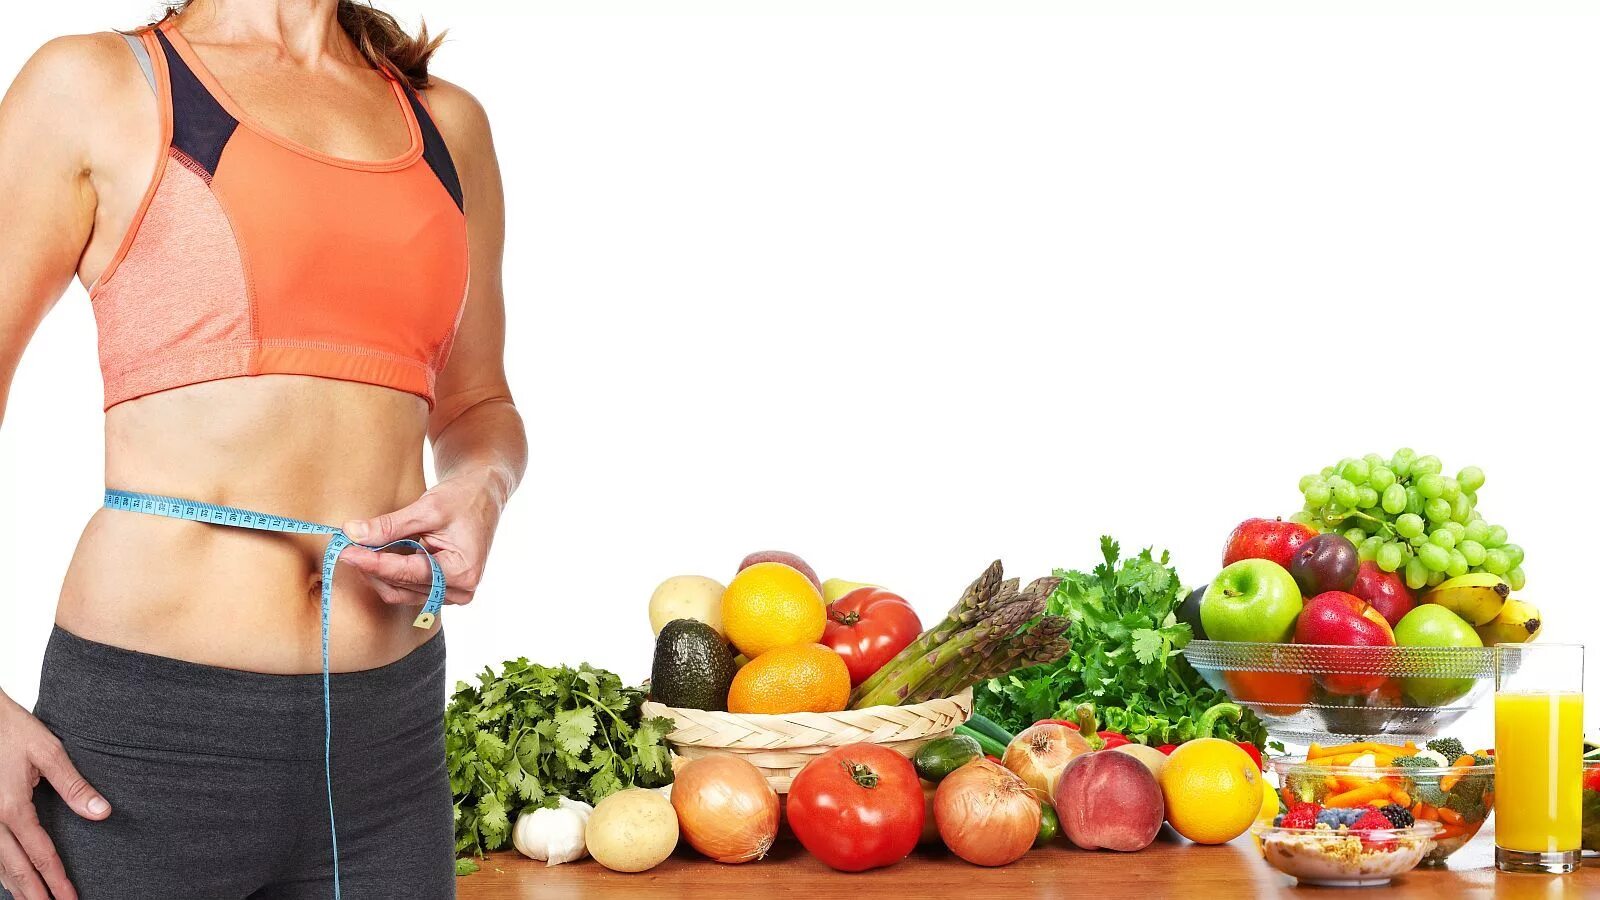 Правильное питание для похудения. Правильное питание и спорт. Здоровое питание и красивая фигура. Стройная фигура правильное питание. Fast tips